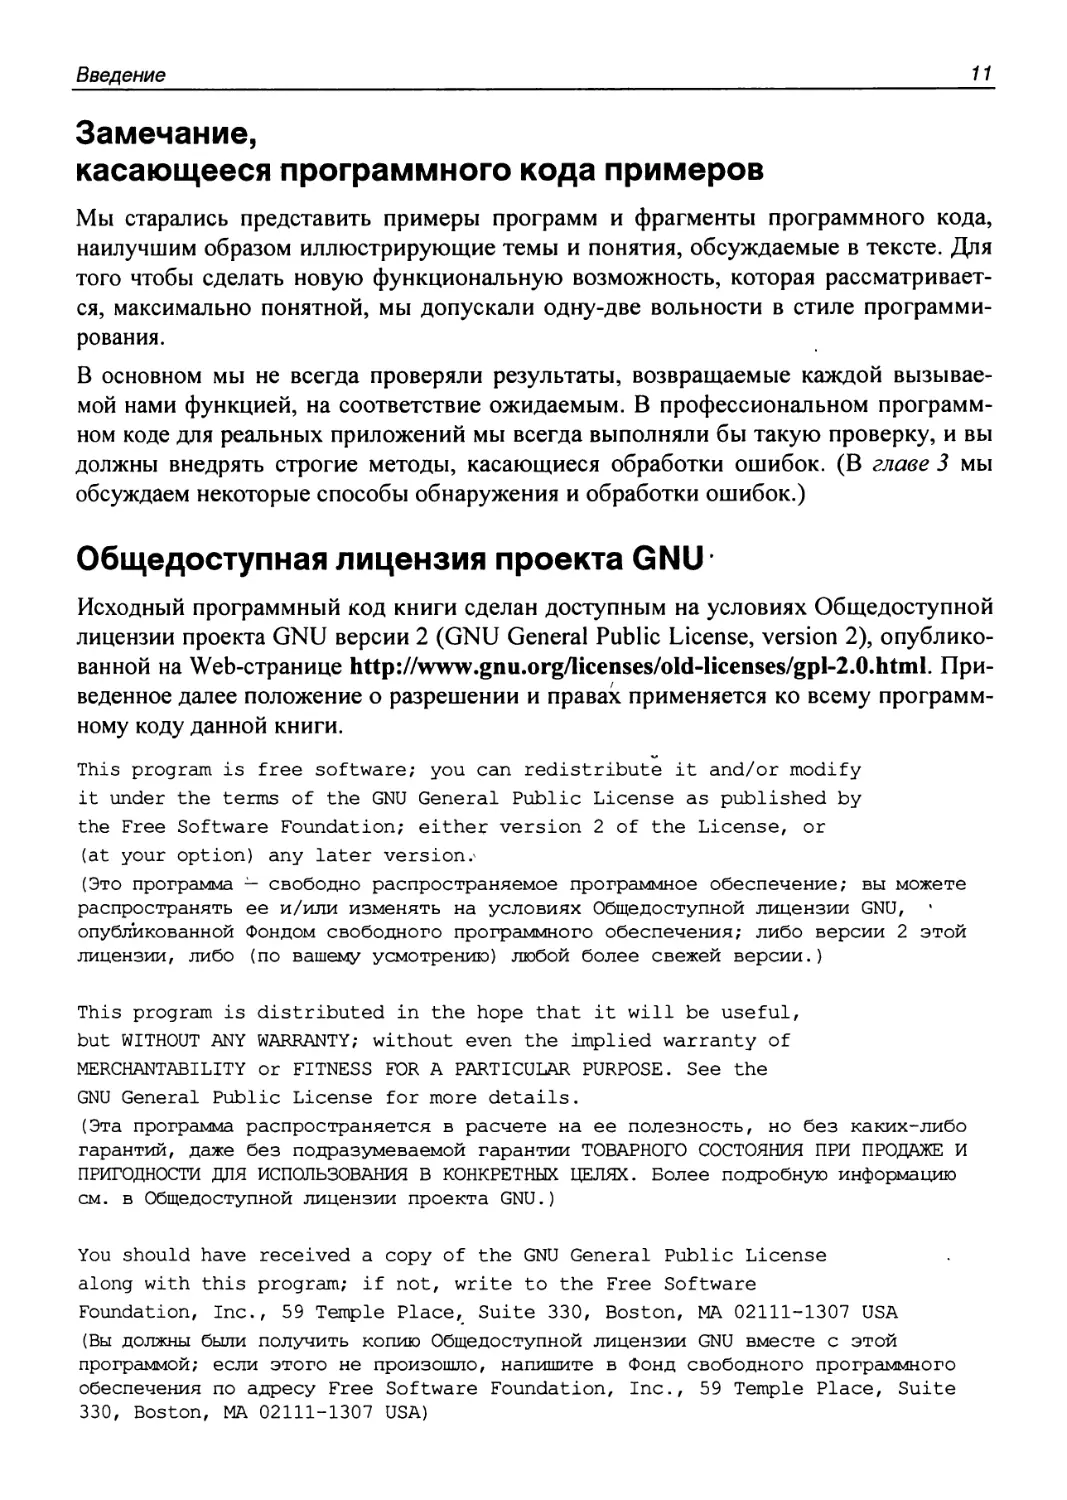 Общедоступная лицензия проекта GNU